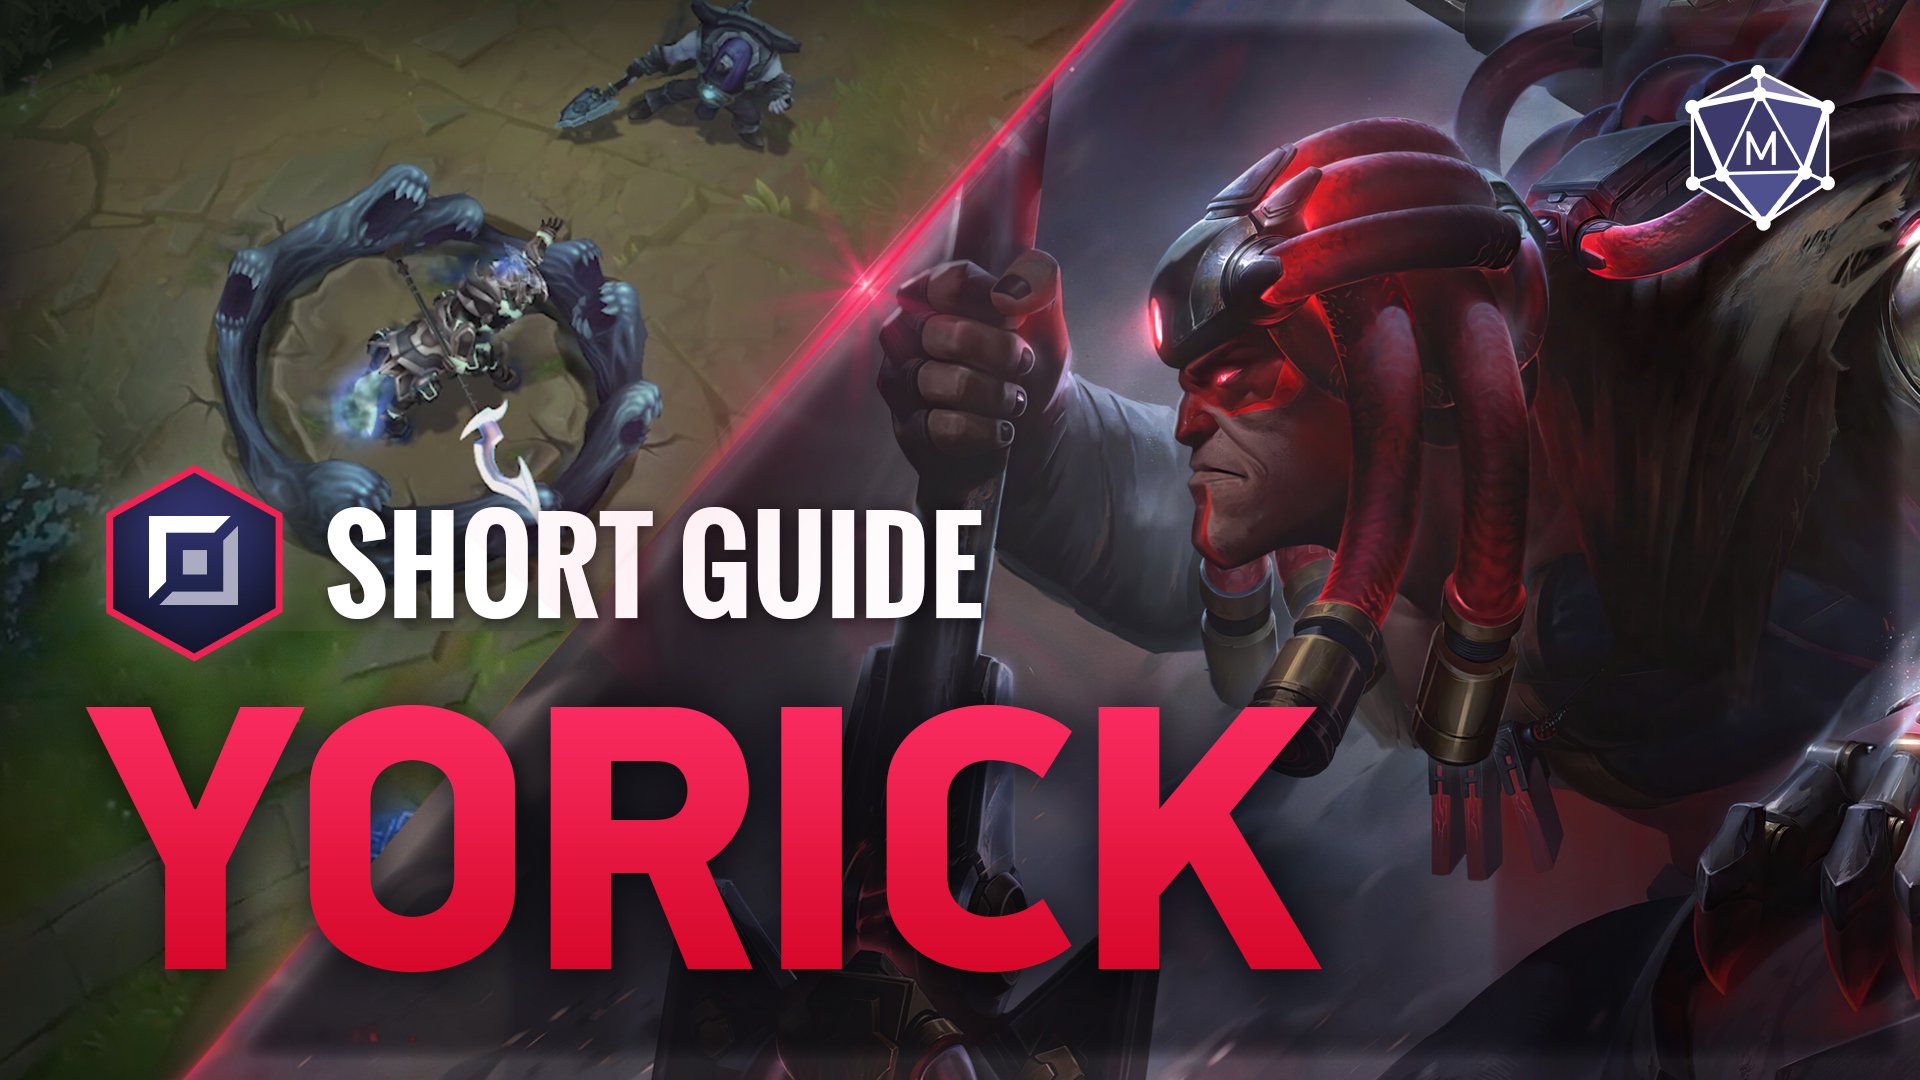 Yorick expert guide